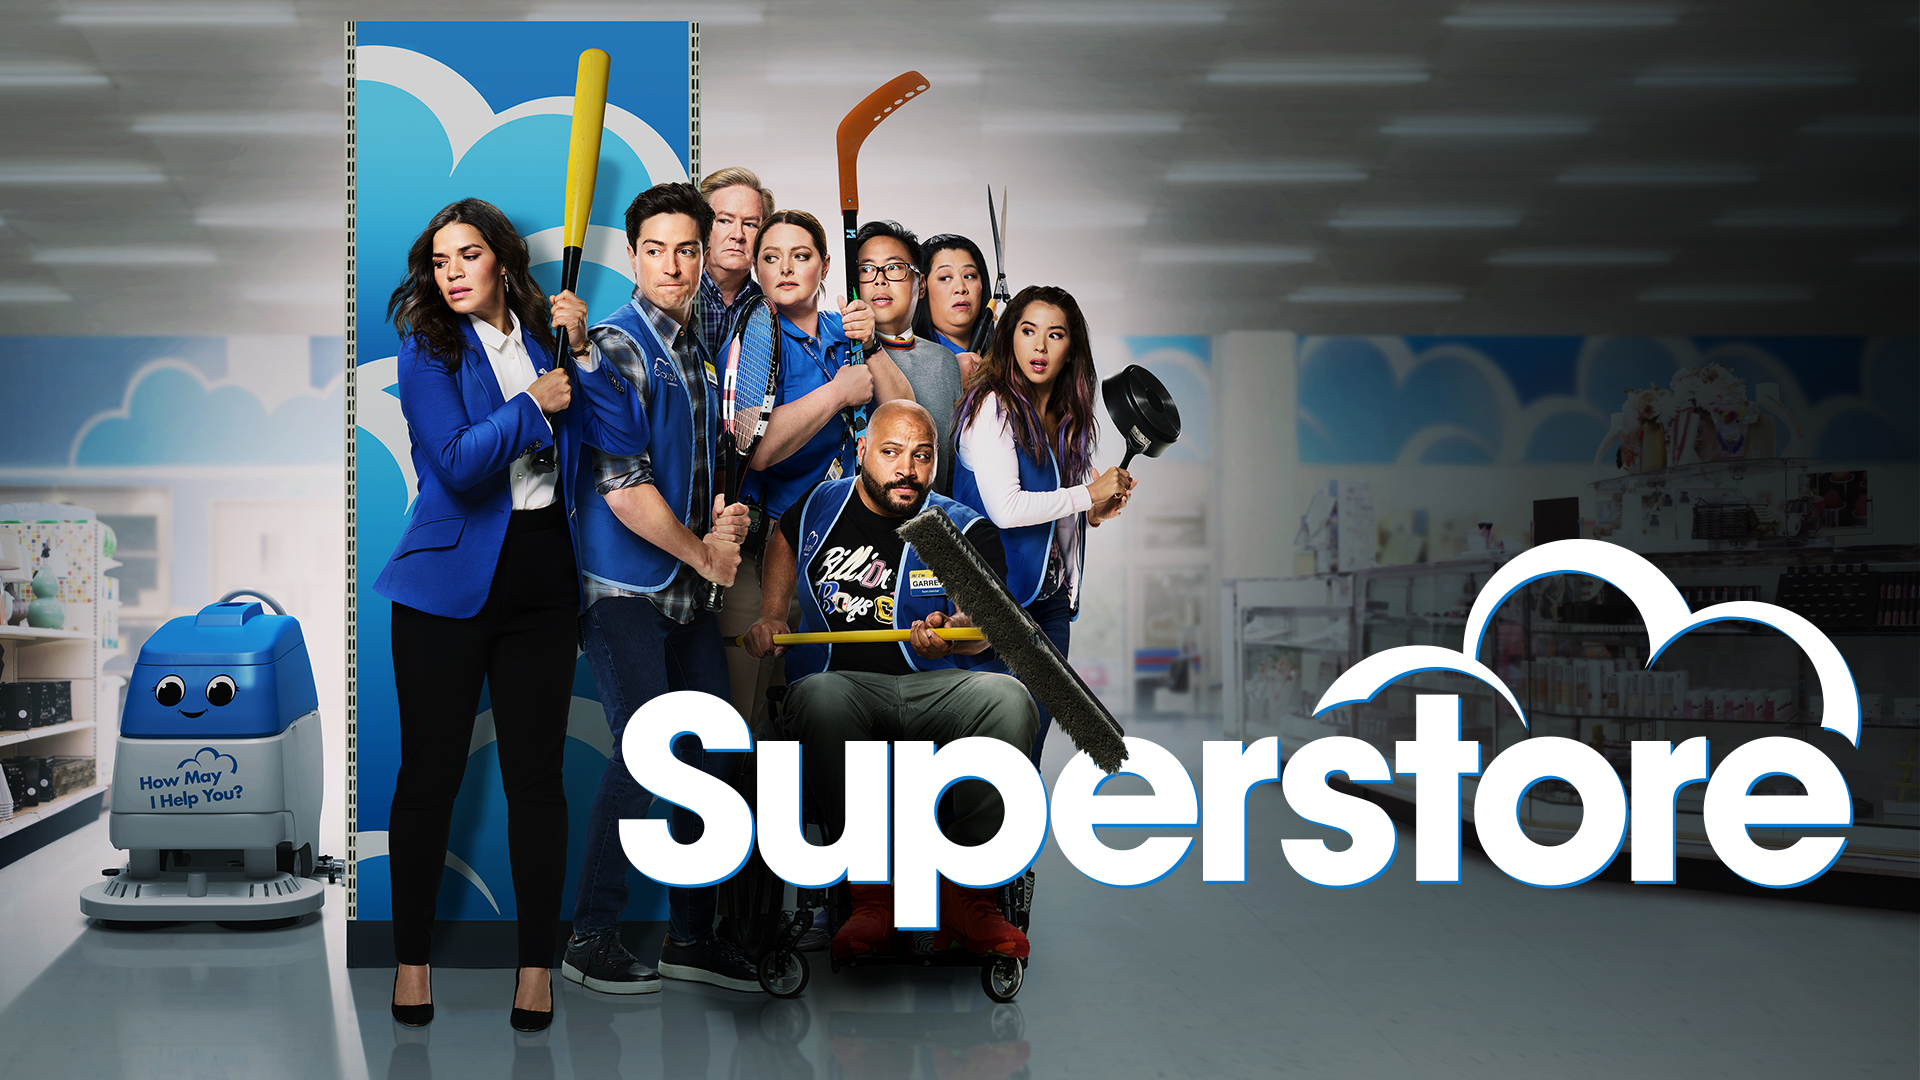 Superstore Cast - NBC.com